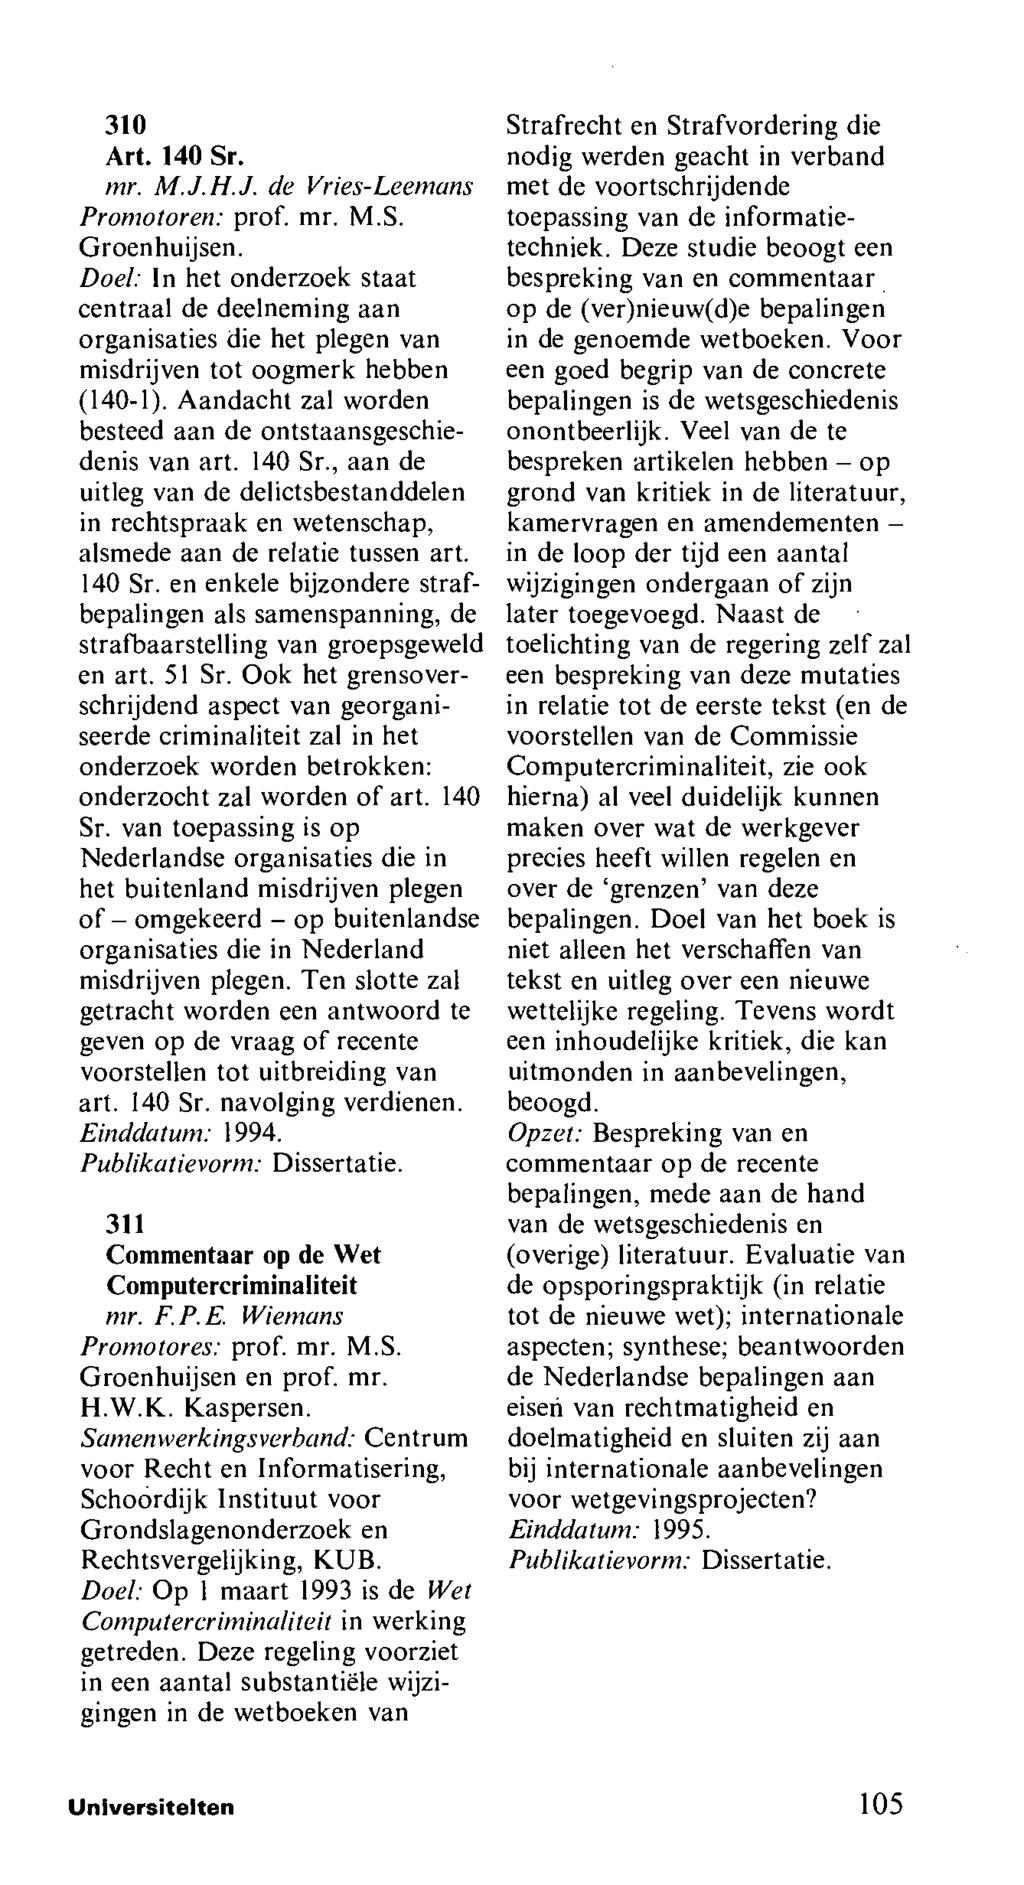 310 Art. 140 Sr. mr. M.J.H.J. de Vries-Leemans Promotoren: prof. mr. M.S. Groenhuijsen.